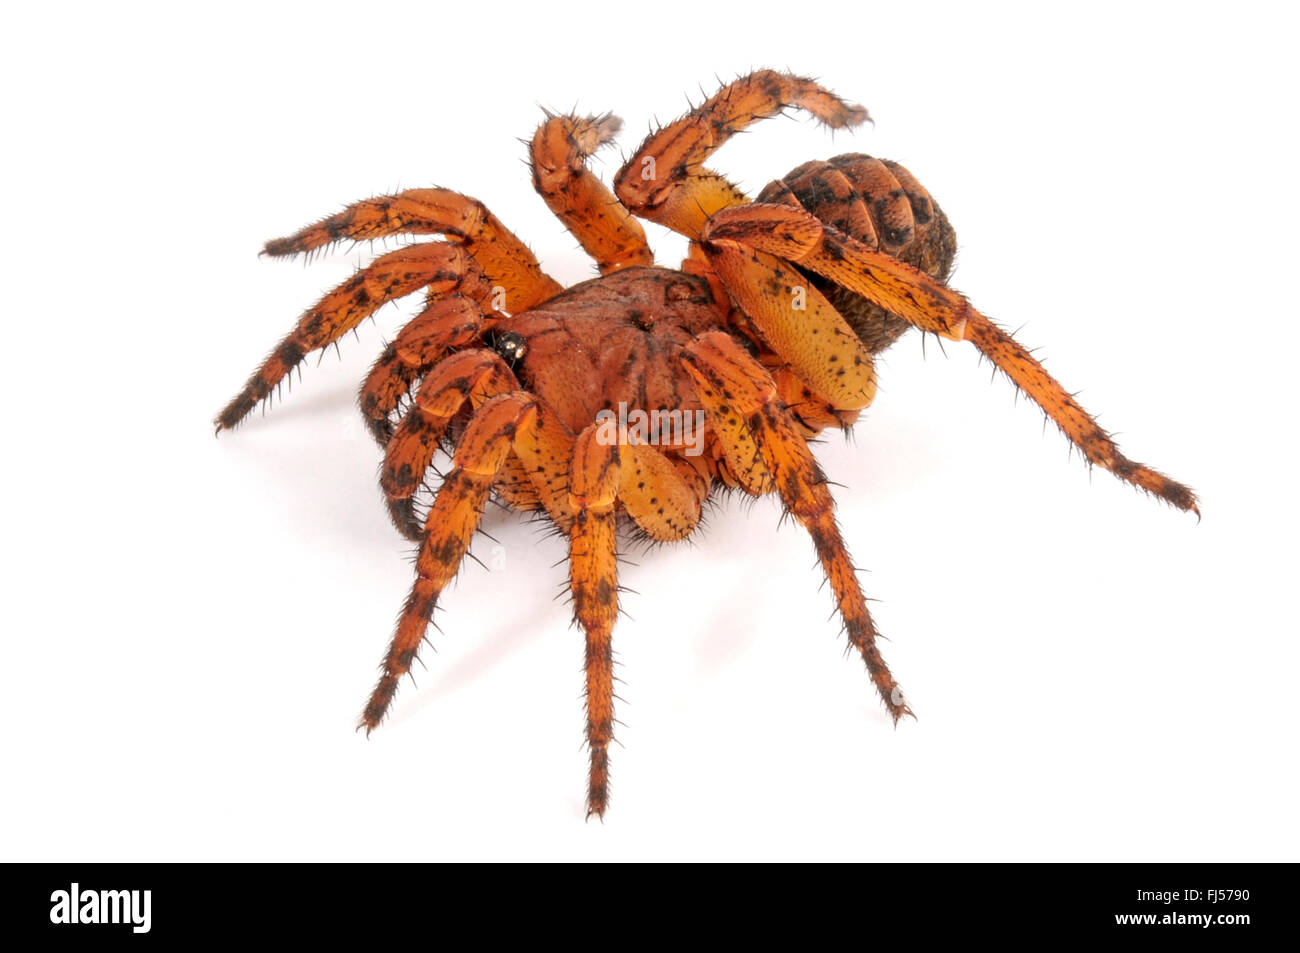 Trapdoor spider (Liphistius erawan), very poisonous Trapdoor spider from Thailand, cut-out, Thailand Stock Photo